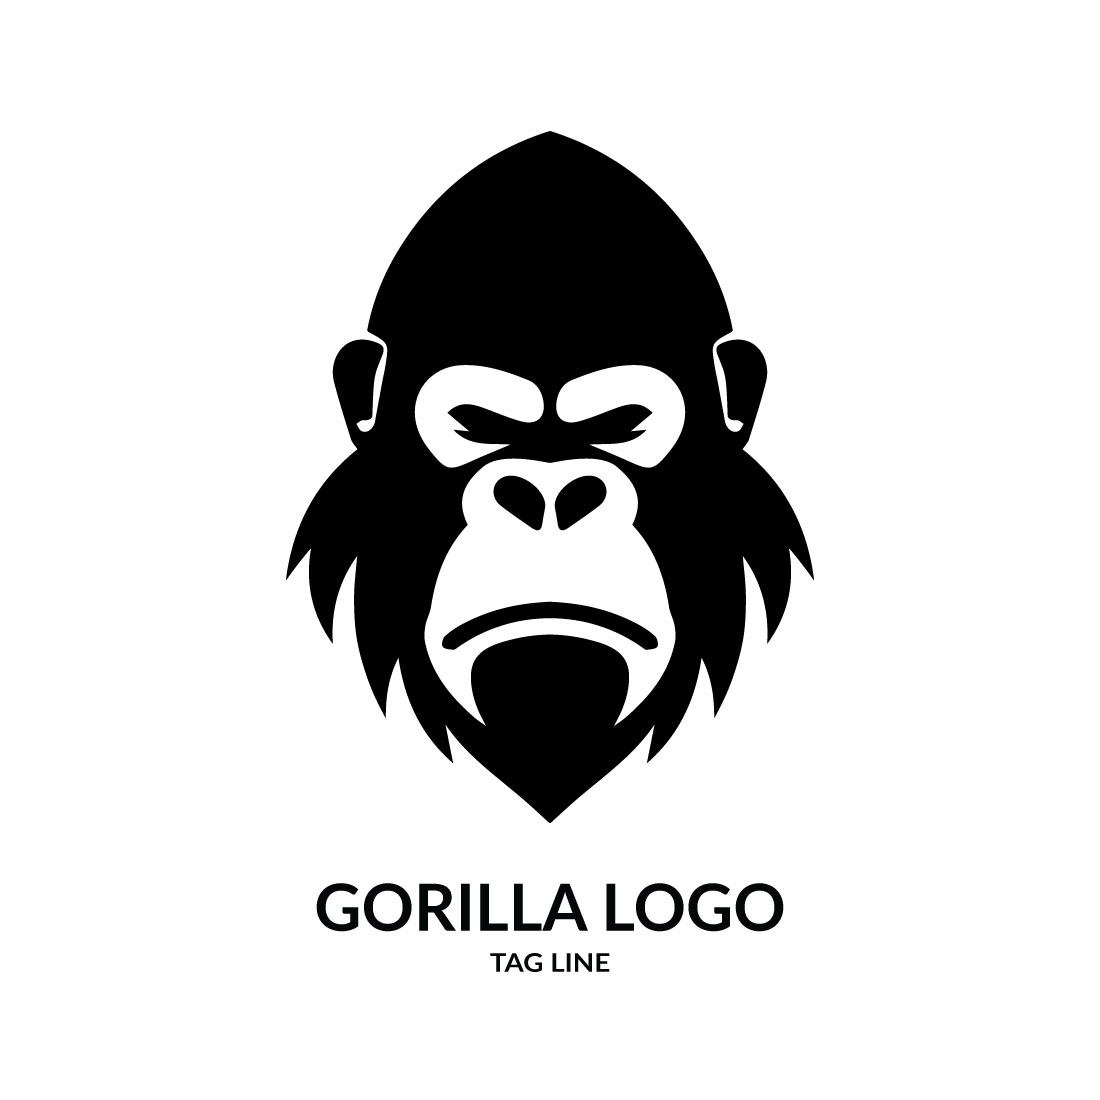 Gorilla Head Logo Template cover image.